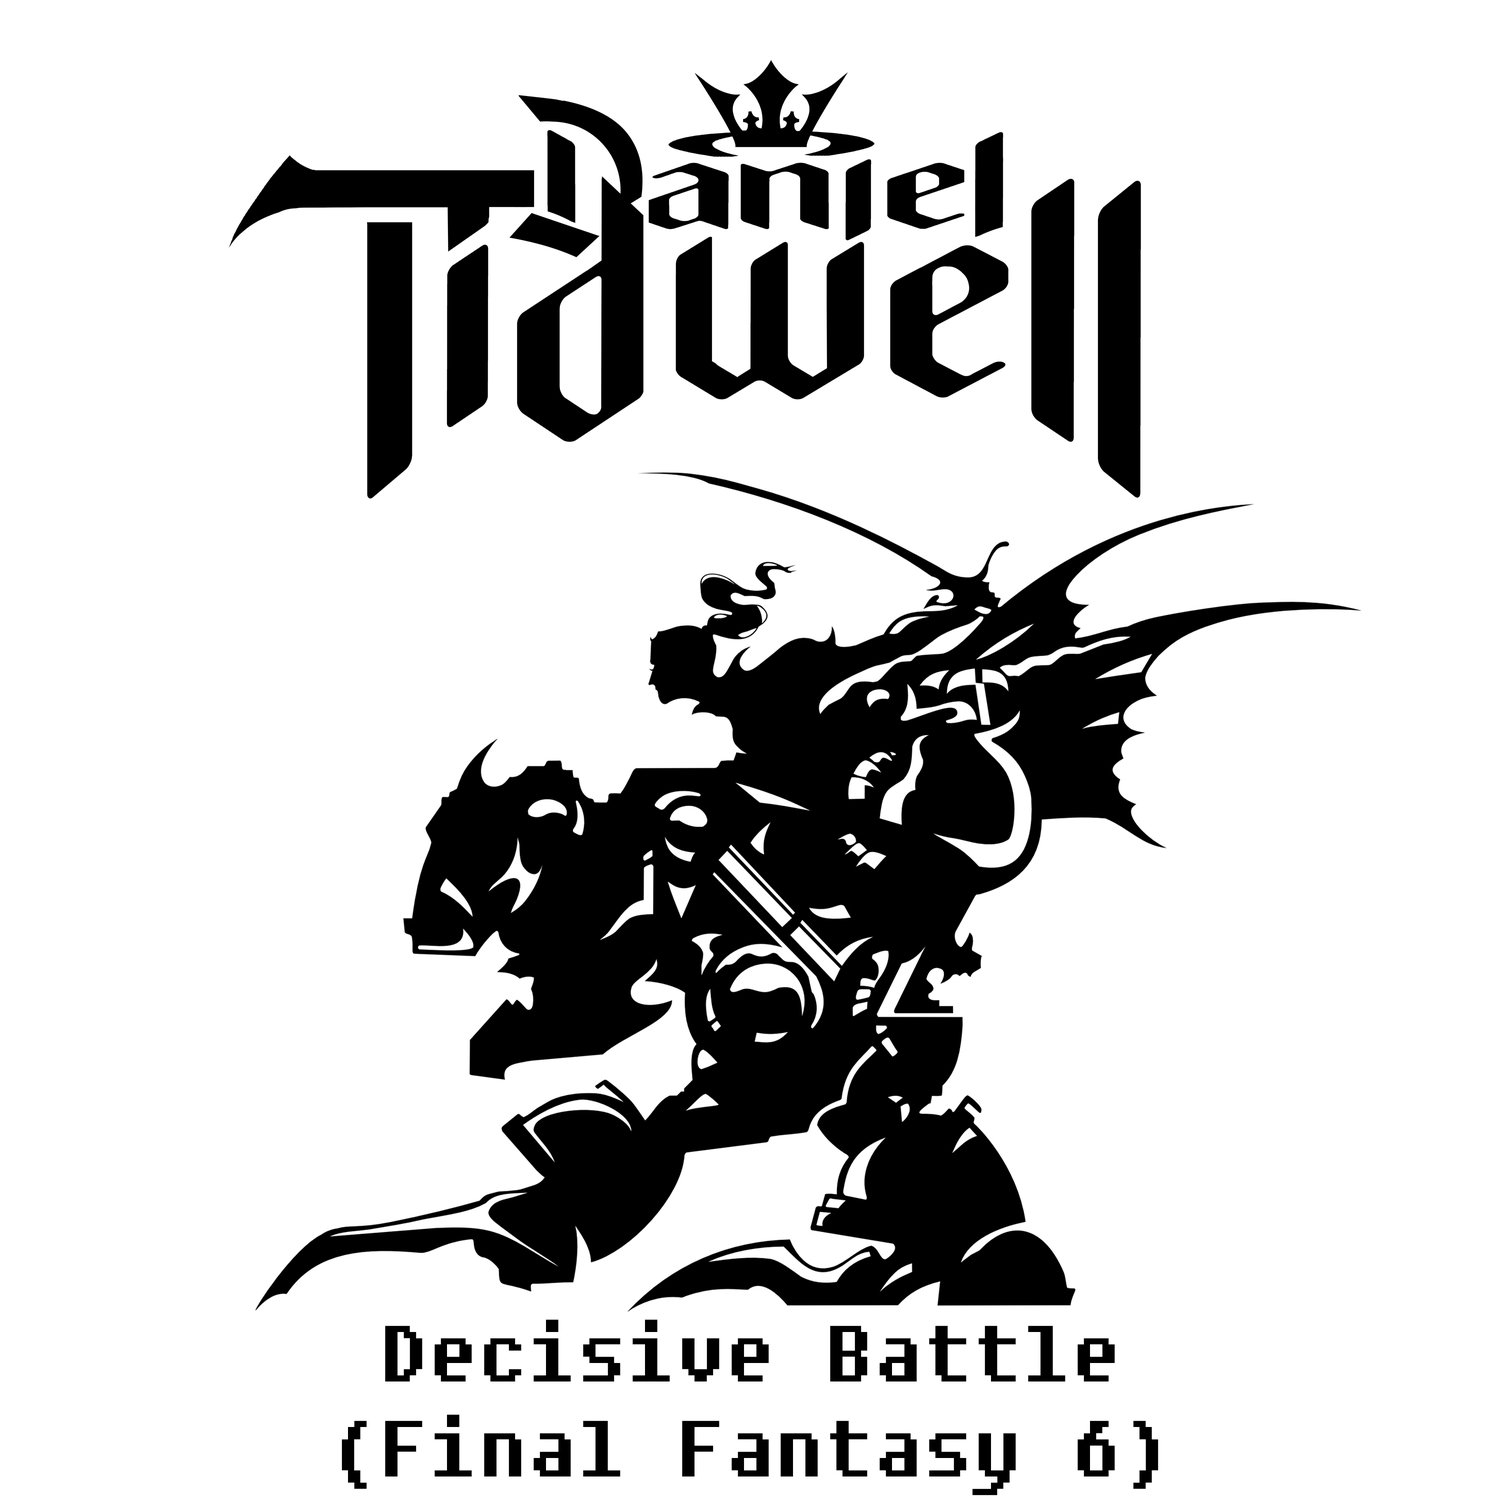 Decisive battle. Daniel Tidwell. Symphony Tidwell. Daniel Tidwell Holy orders.